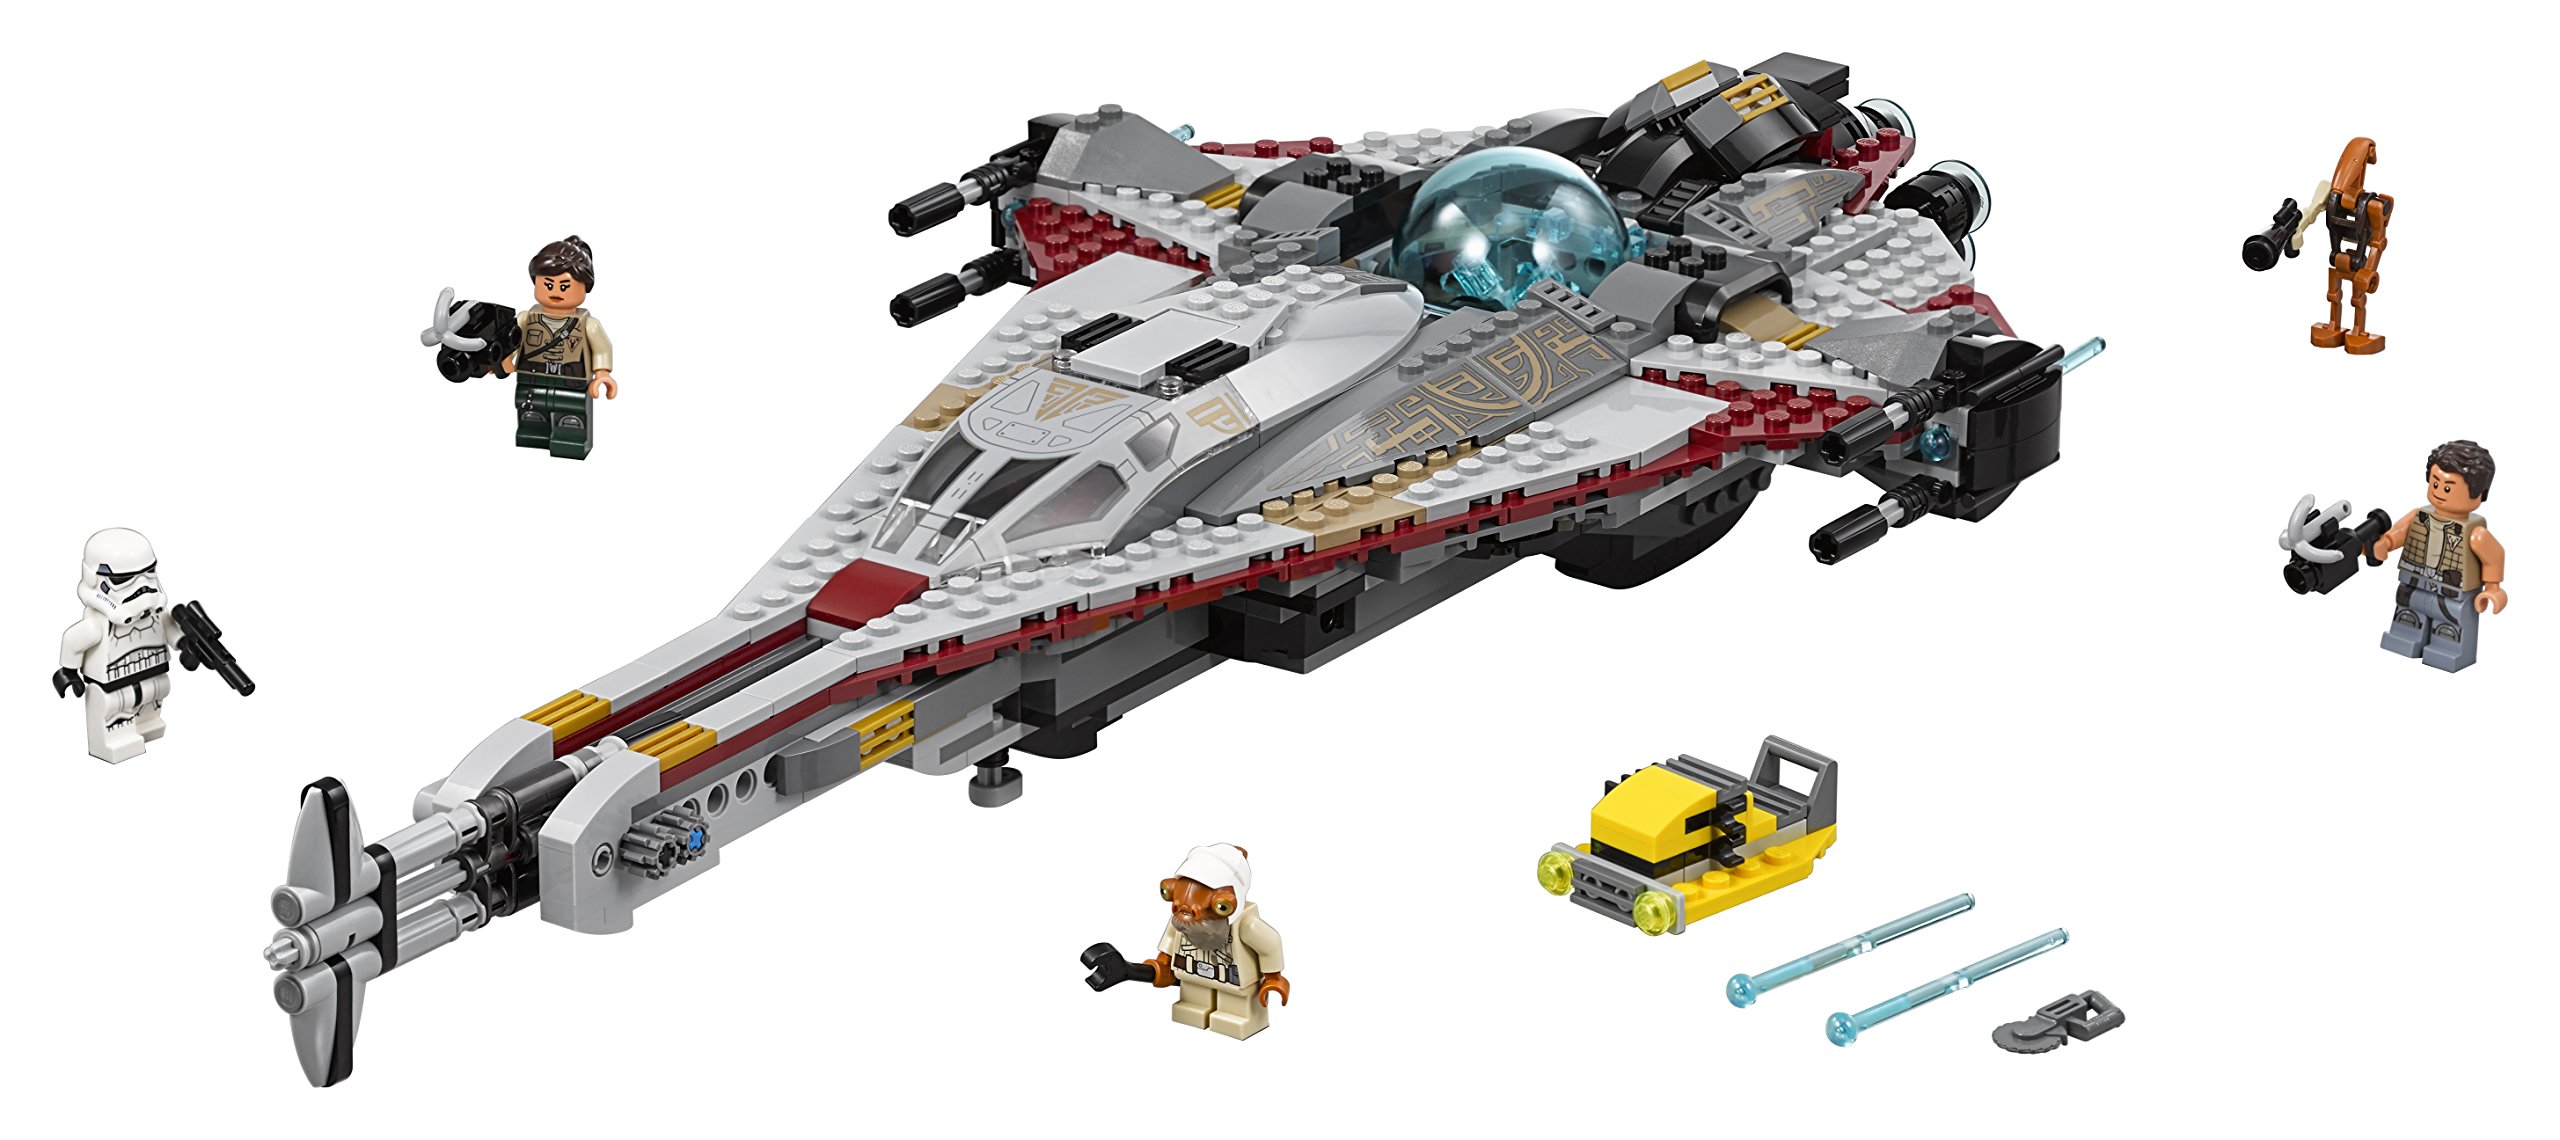 Lego Star Wars The Arrowhead Star Wars Spaceship Toy